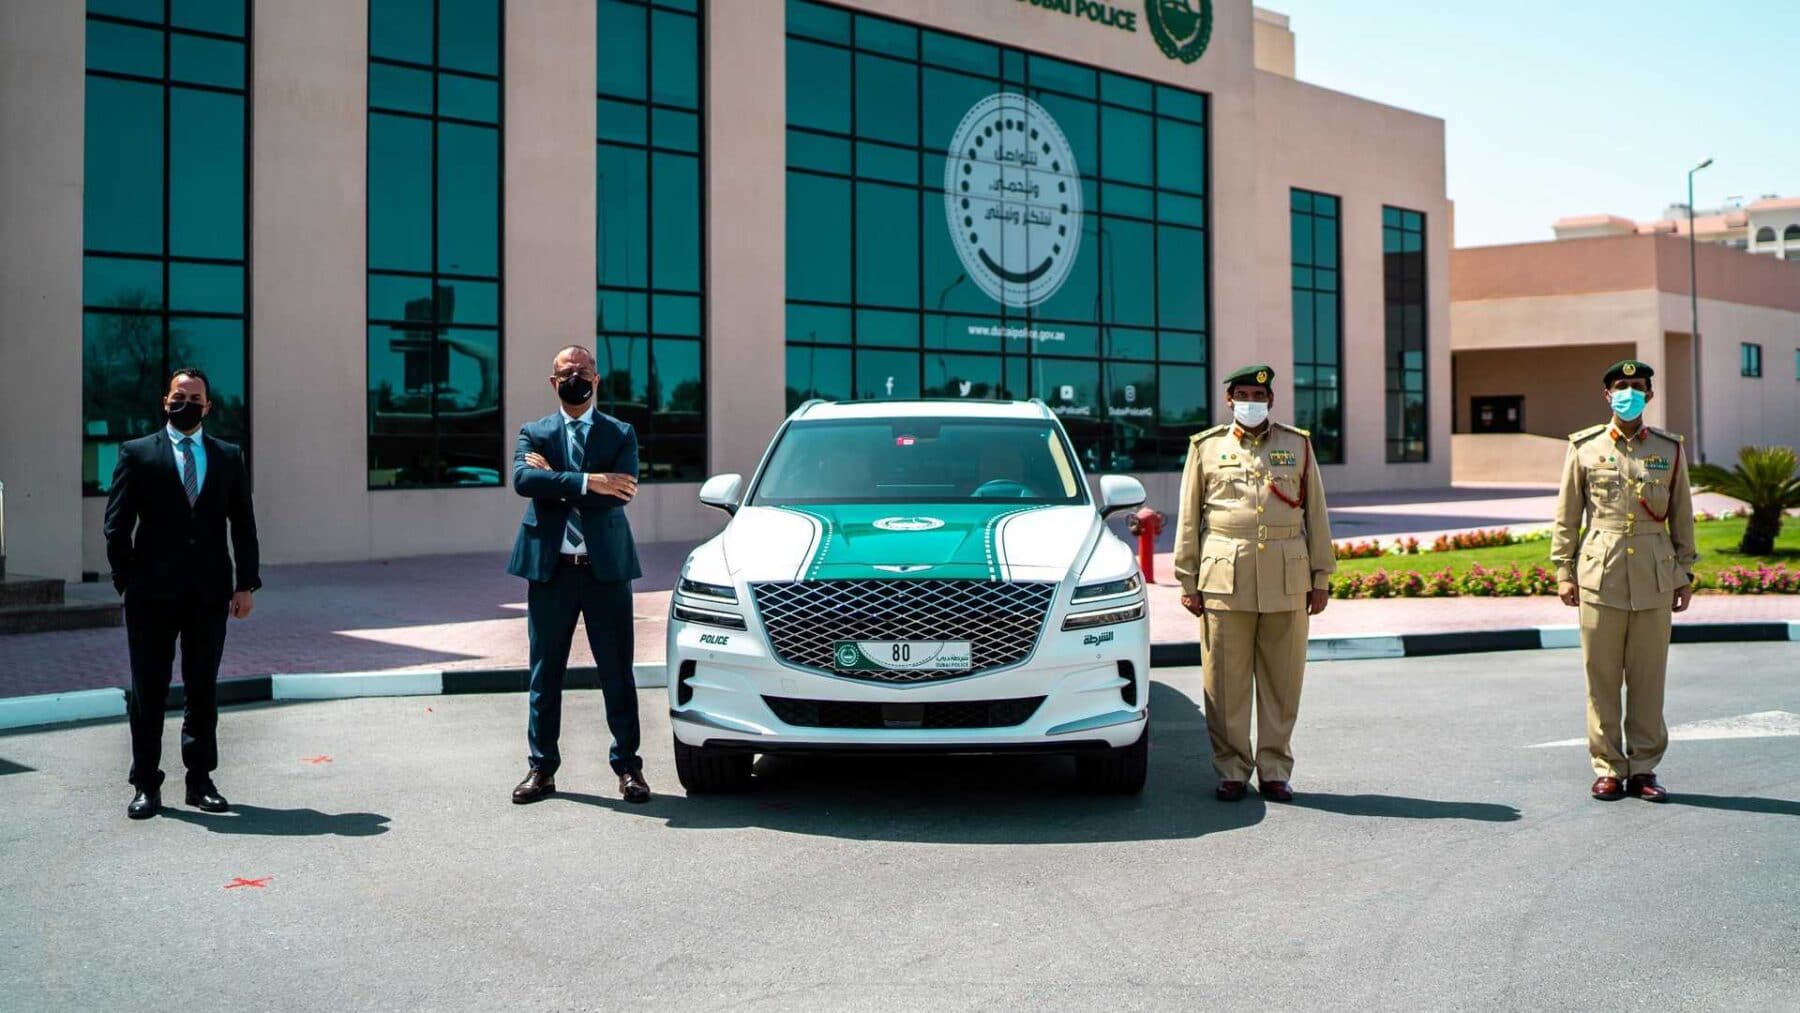 El Genesis GV80 es el nuevo coche patrulla de Dubái